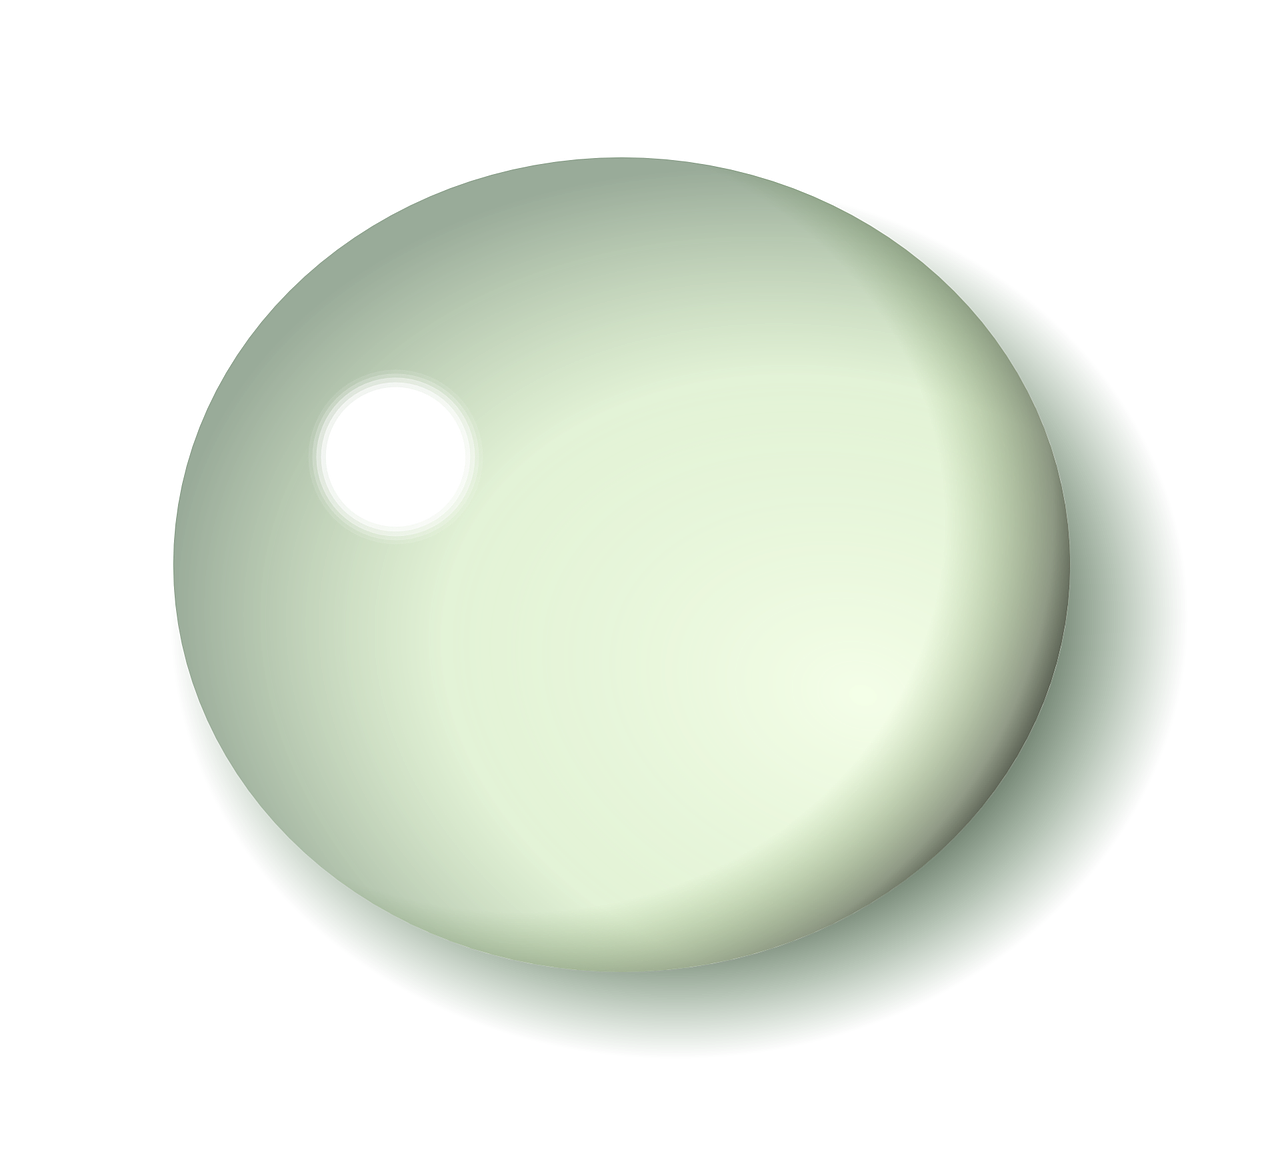 ball droplet circle free photo